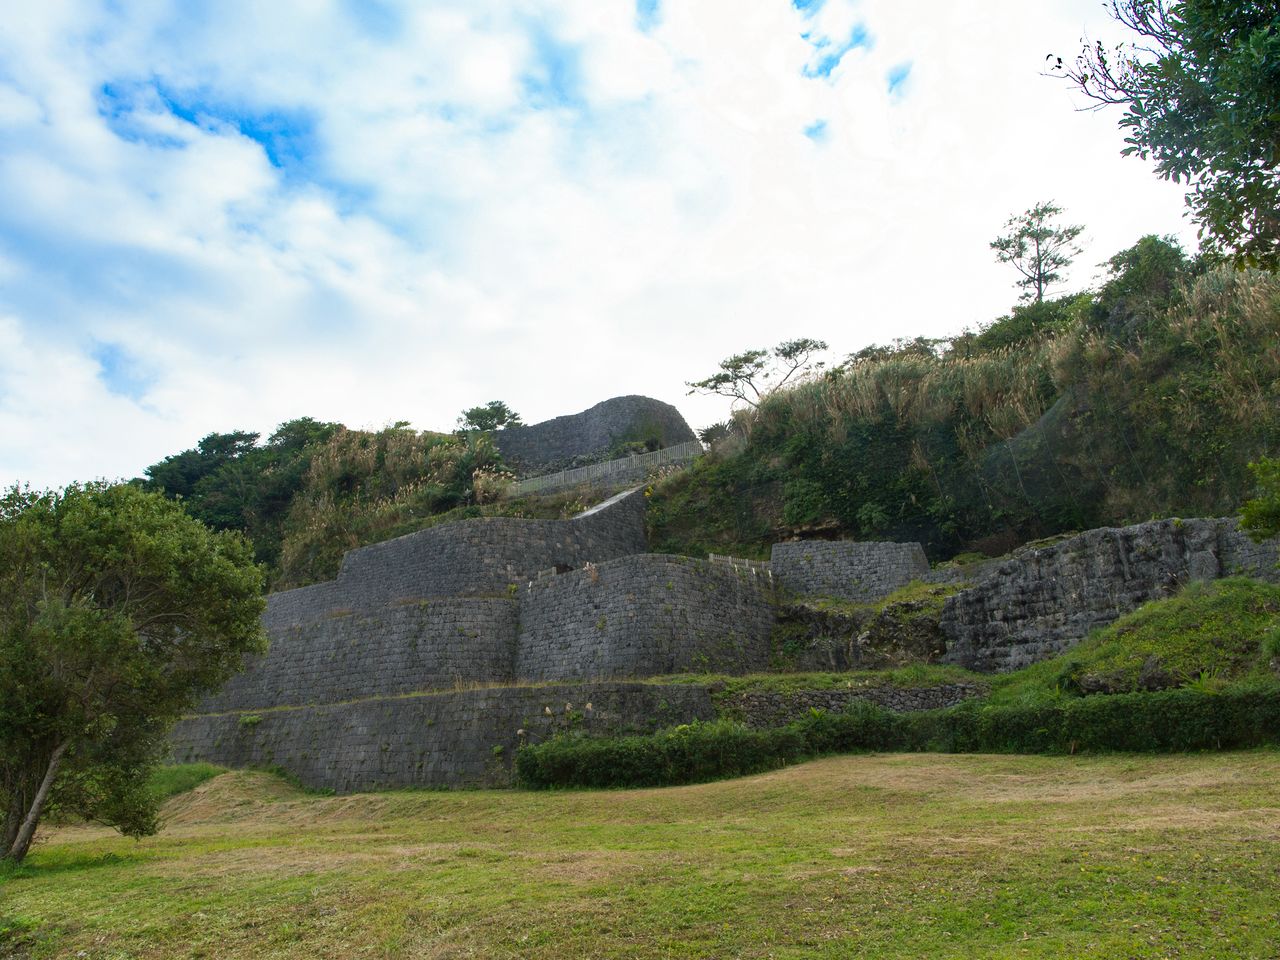 丘陵地にある浦添大公園内にある浦添グスク。「グスク」は、沖縄の方言で「城」のこと。曲線を交えて美しく積み上げられた石垣が印象的だ